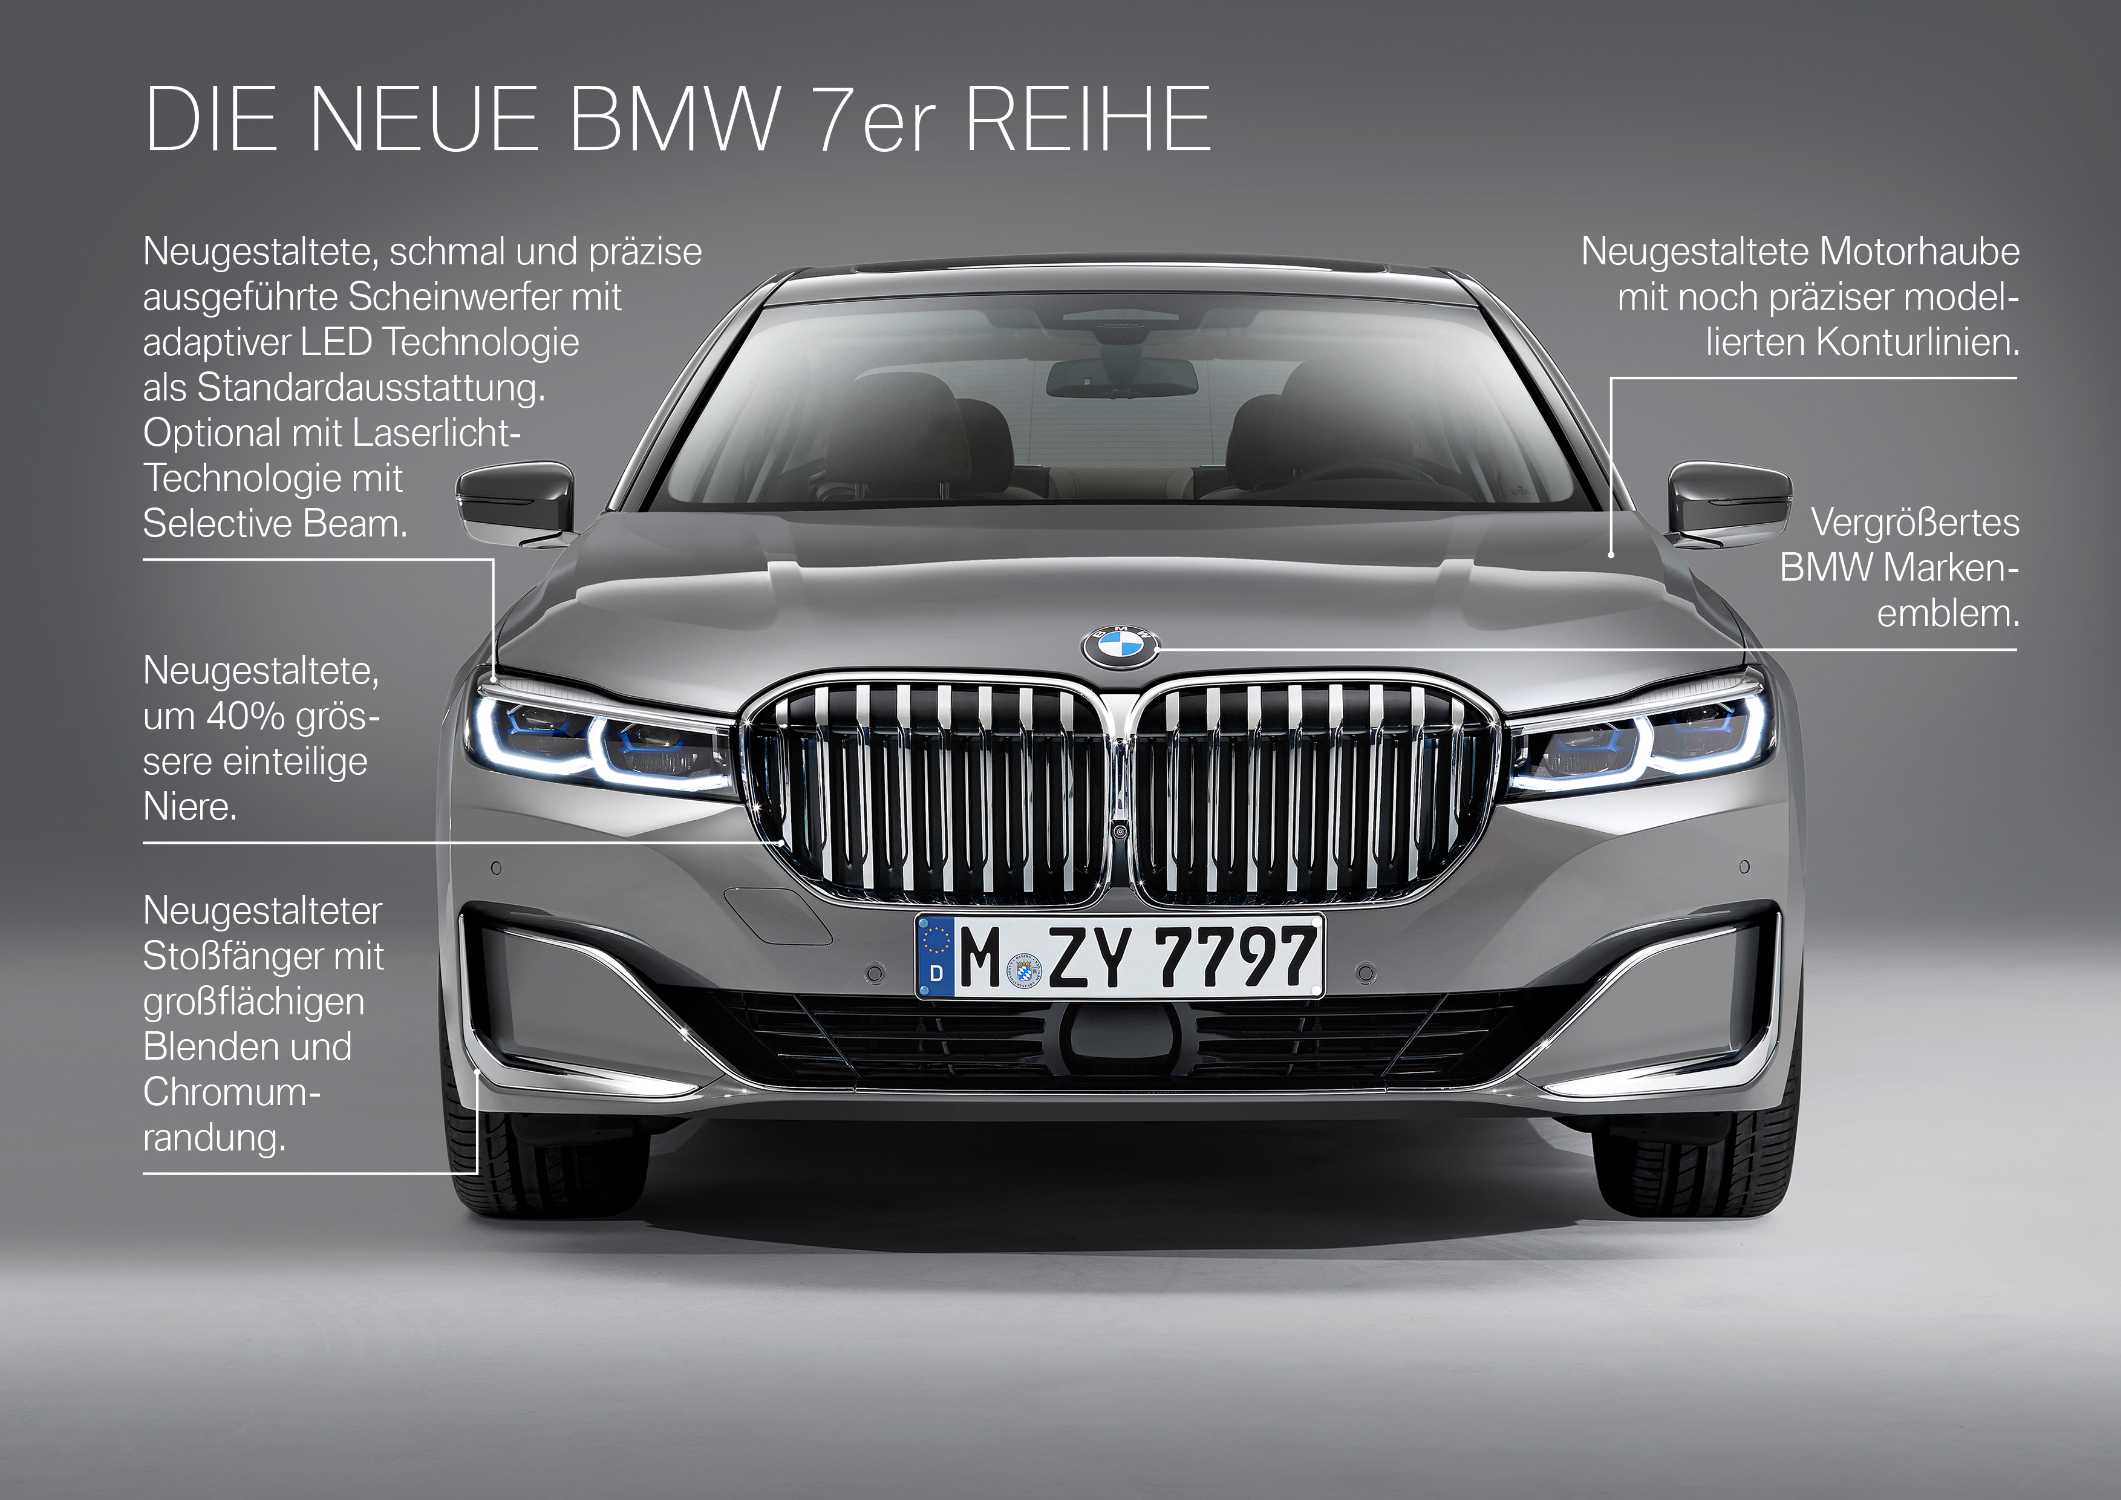 Die neue BMW 7er Reihe in Berninagrau Bernsteineffekt mit Leichtmetallrad Styling 777 und Exklusivleder „Nappa“ mit erweiterten Umfängen / Steppungen in Cognac / Schwarz (01/2019).